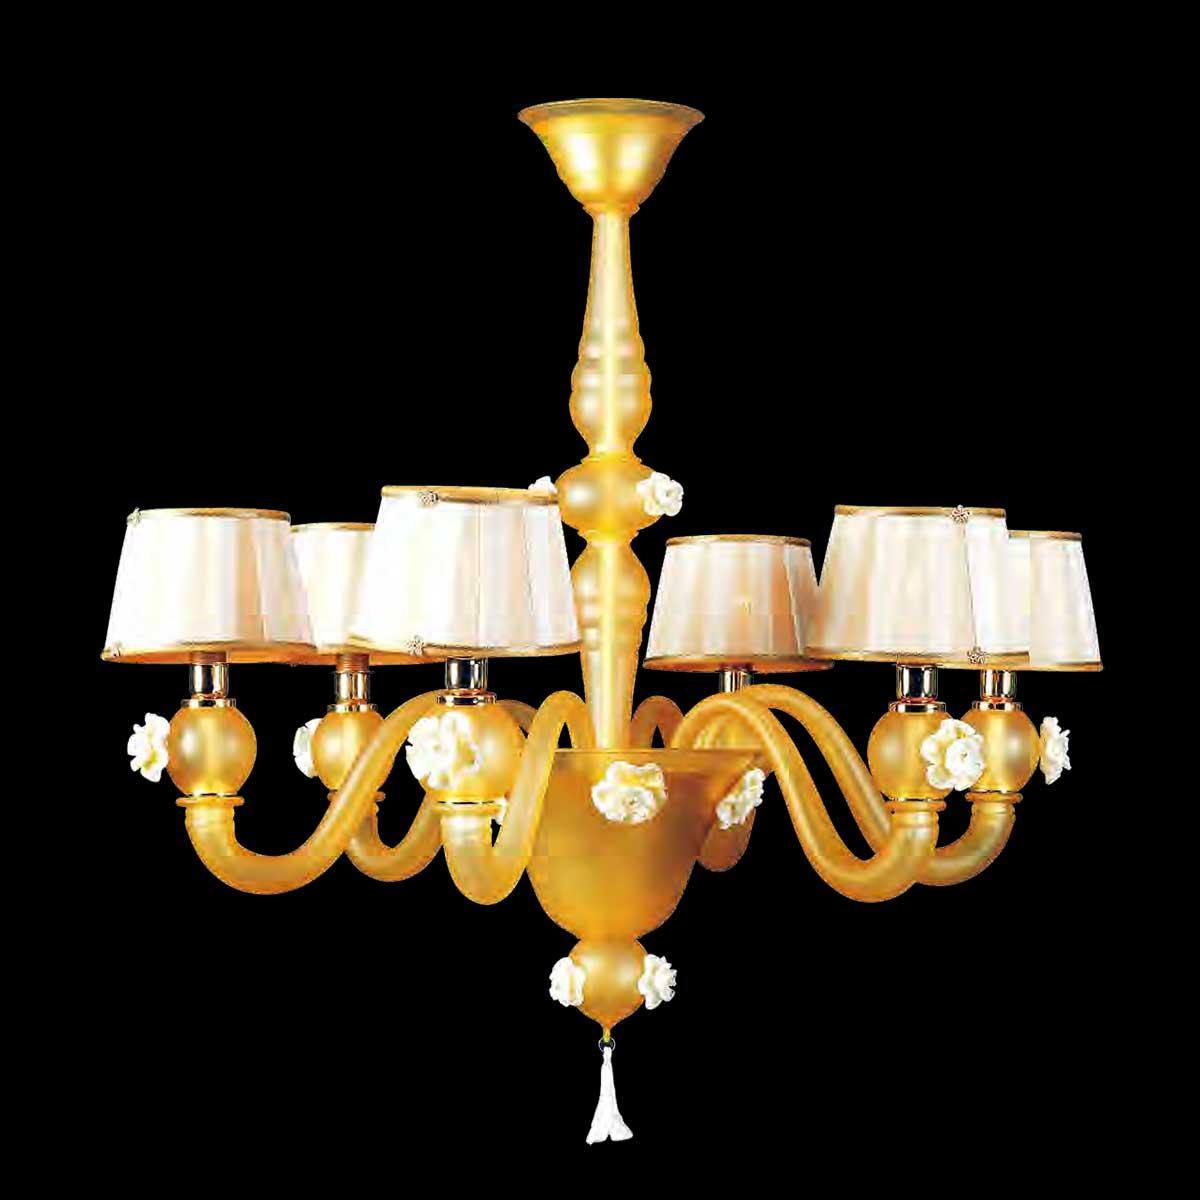 "Ariele" lampara de araña de Murano - 6 luces - ámbar